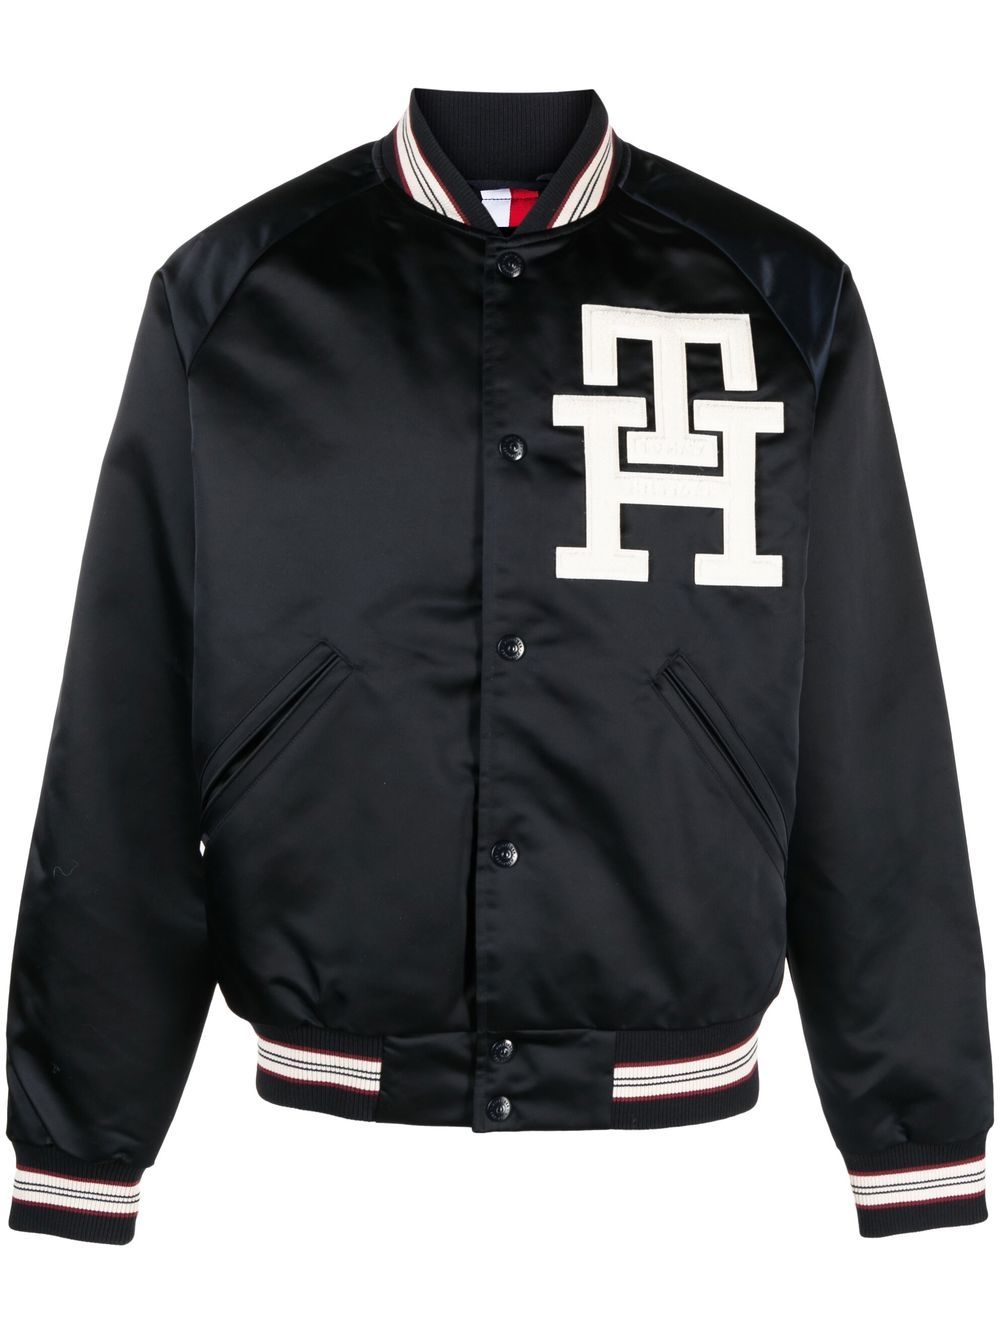 TH Monogram Leather Varsity Jacket